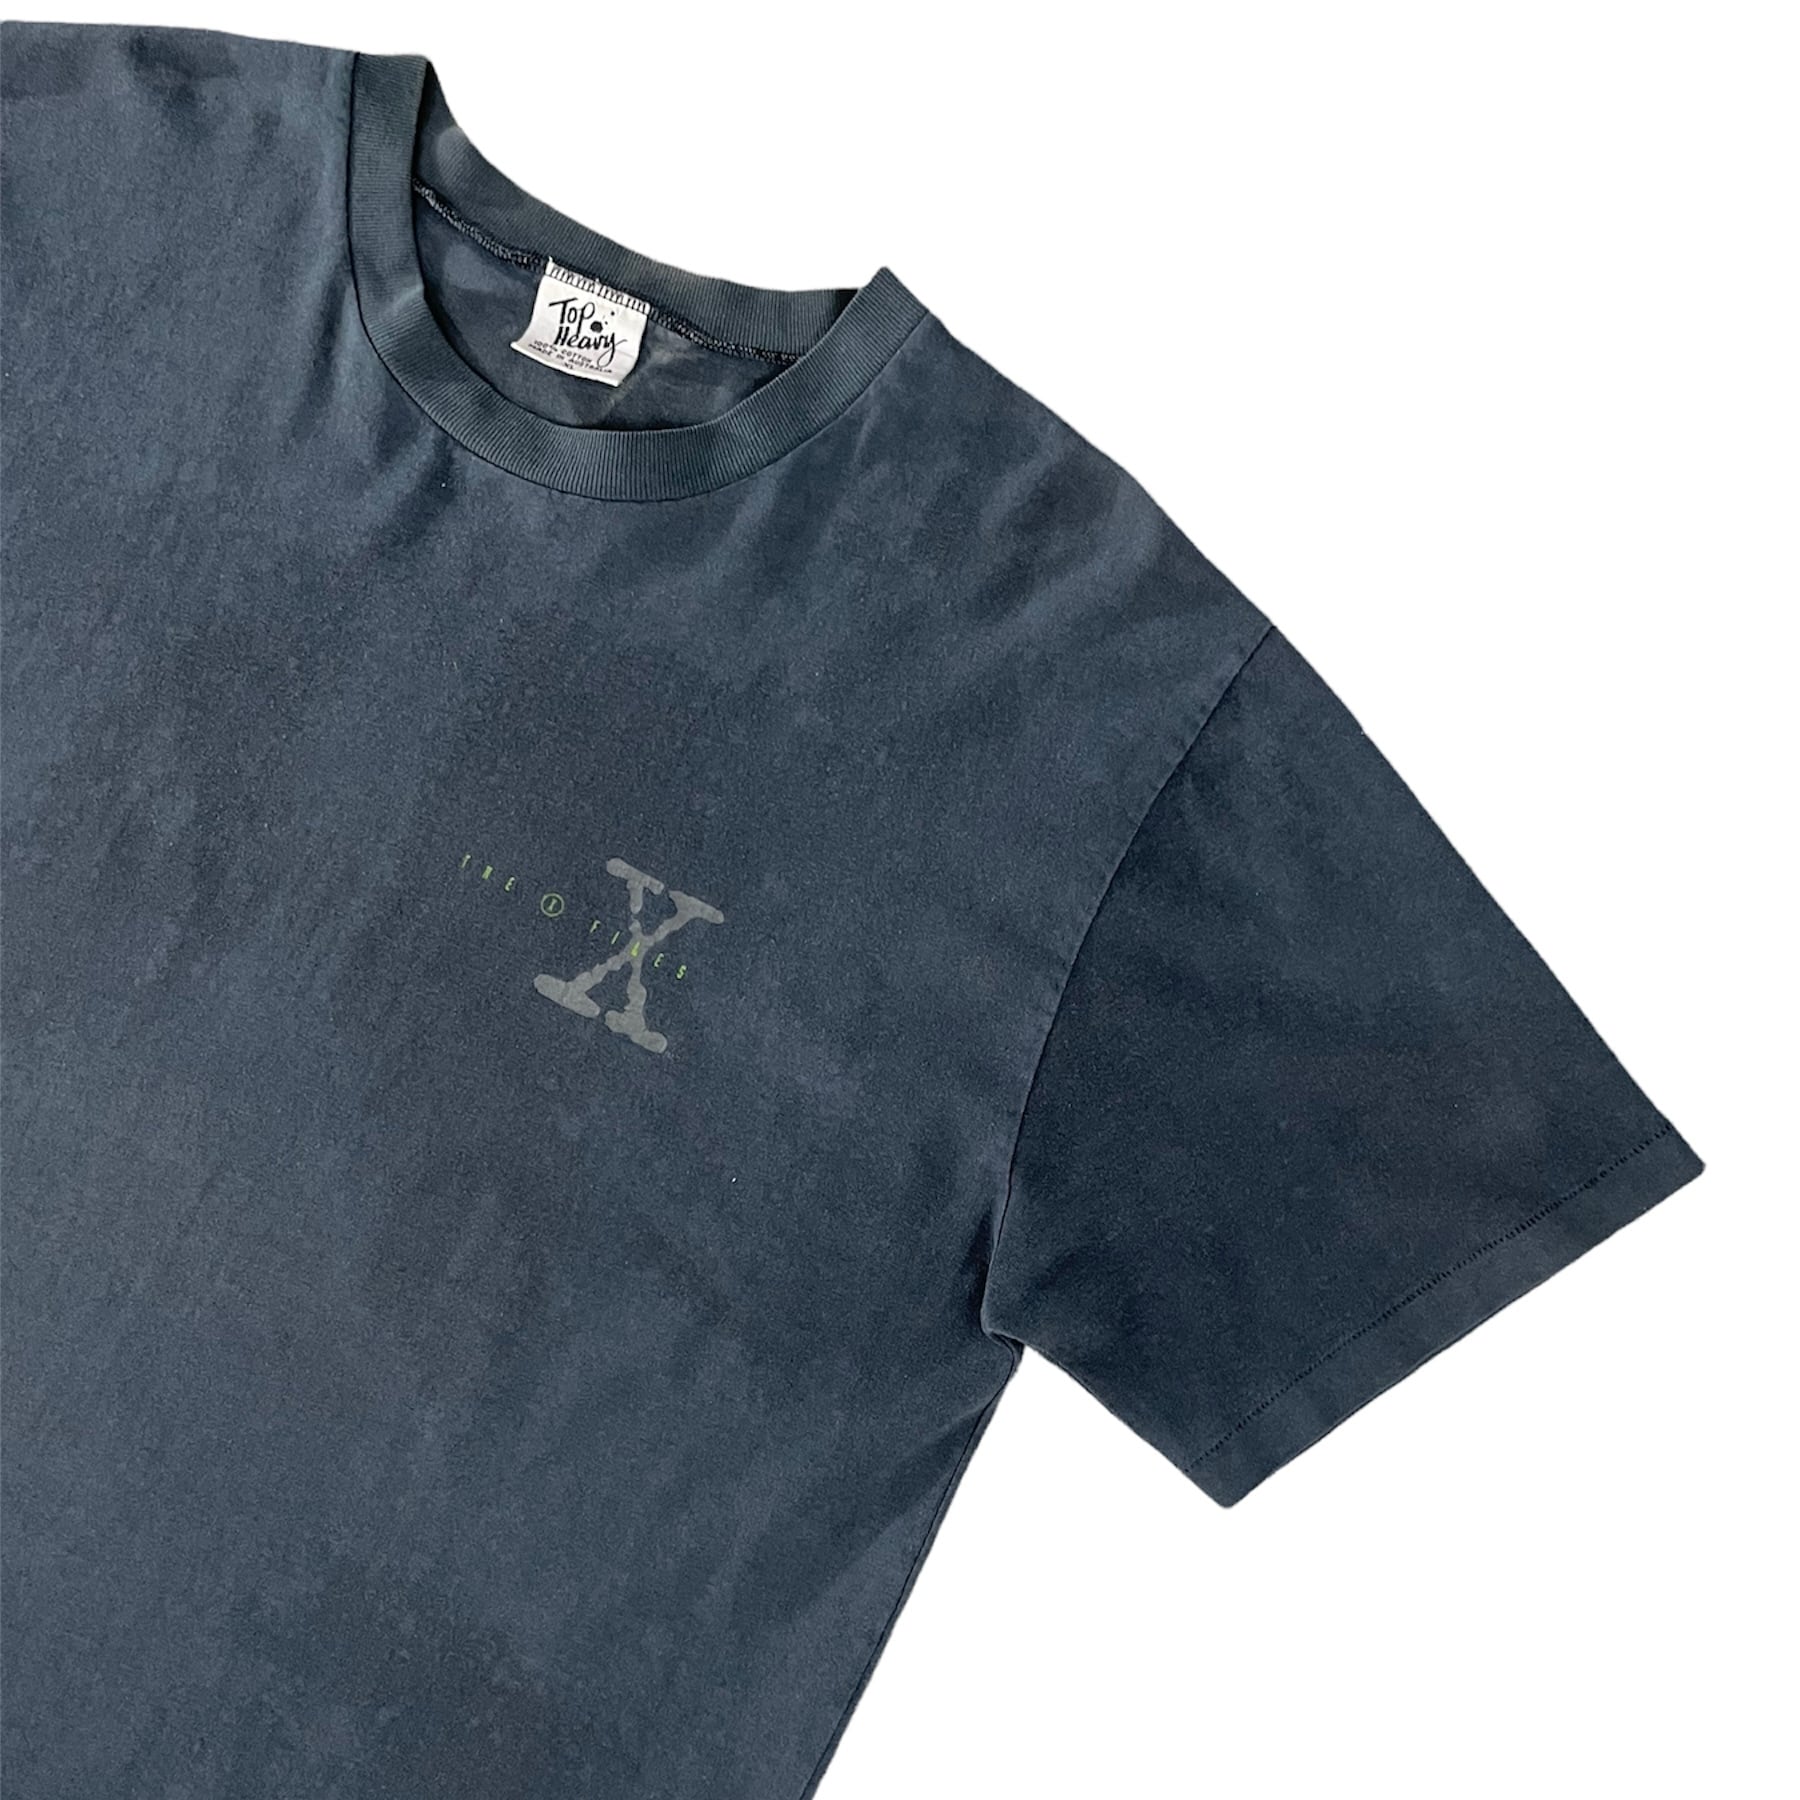 1074. 1990's X file print tee ブラック バックプリント Tシャツ 半袖